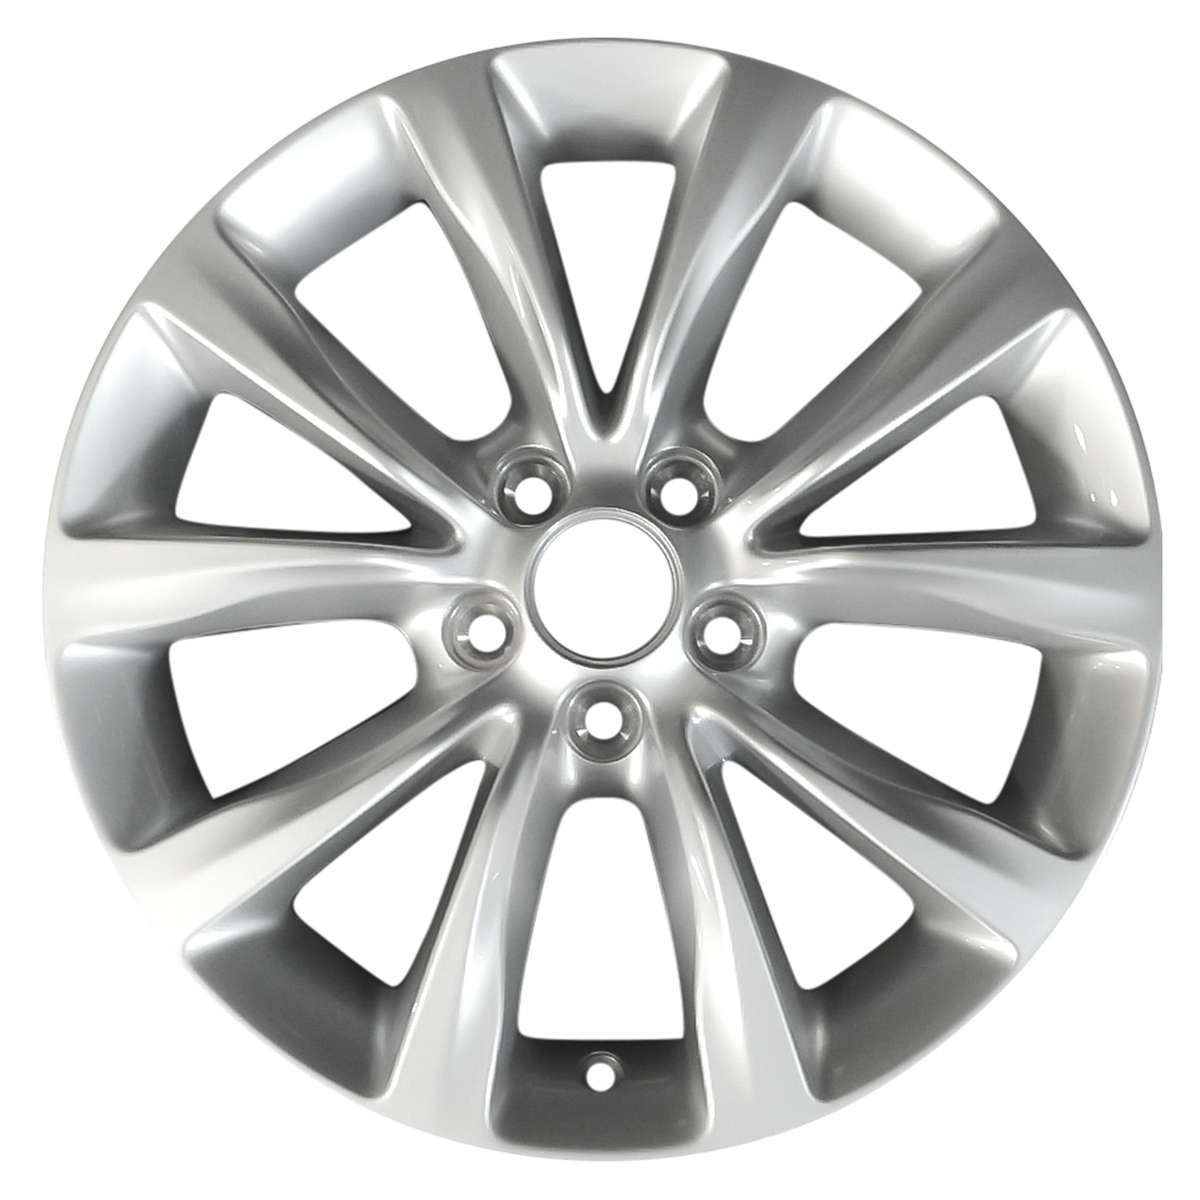 2015 Chrysler 200 17" OEM Wheel Rim W2513S